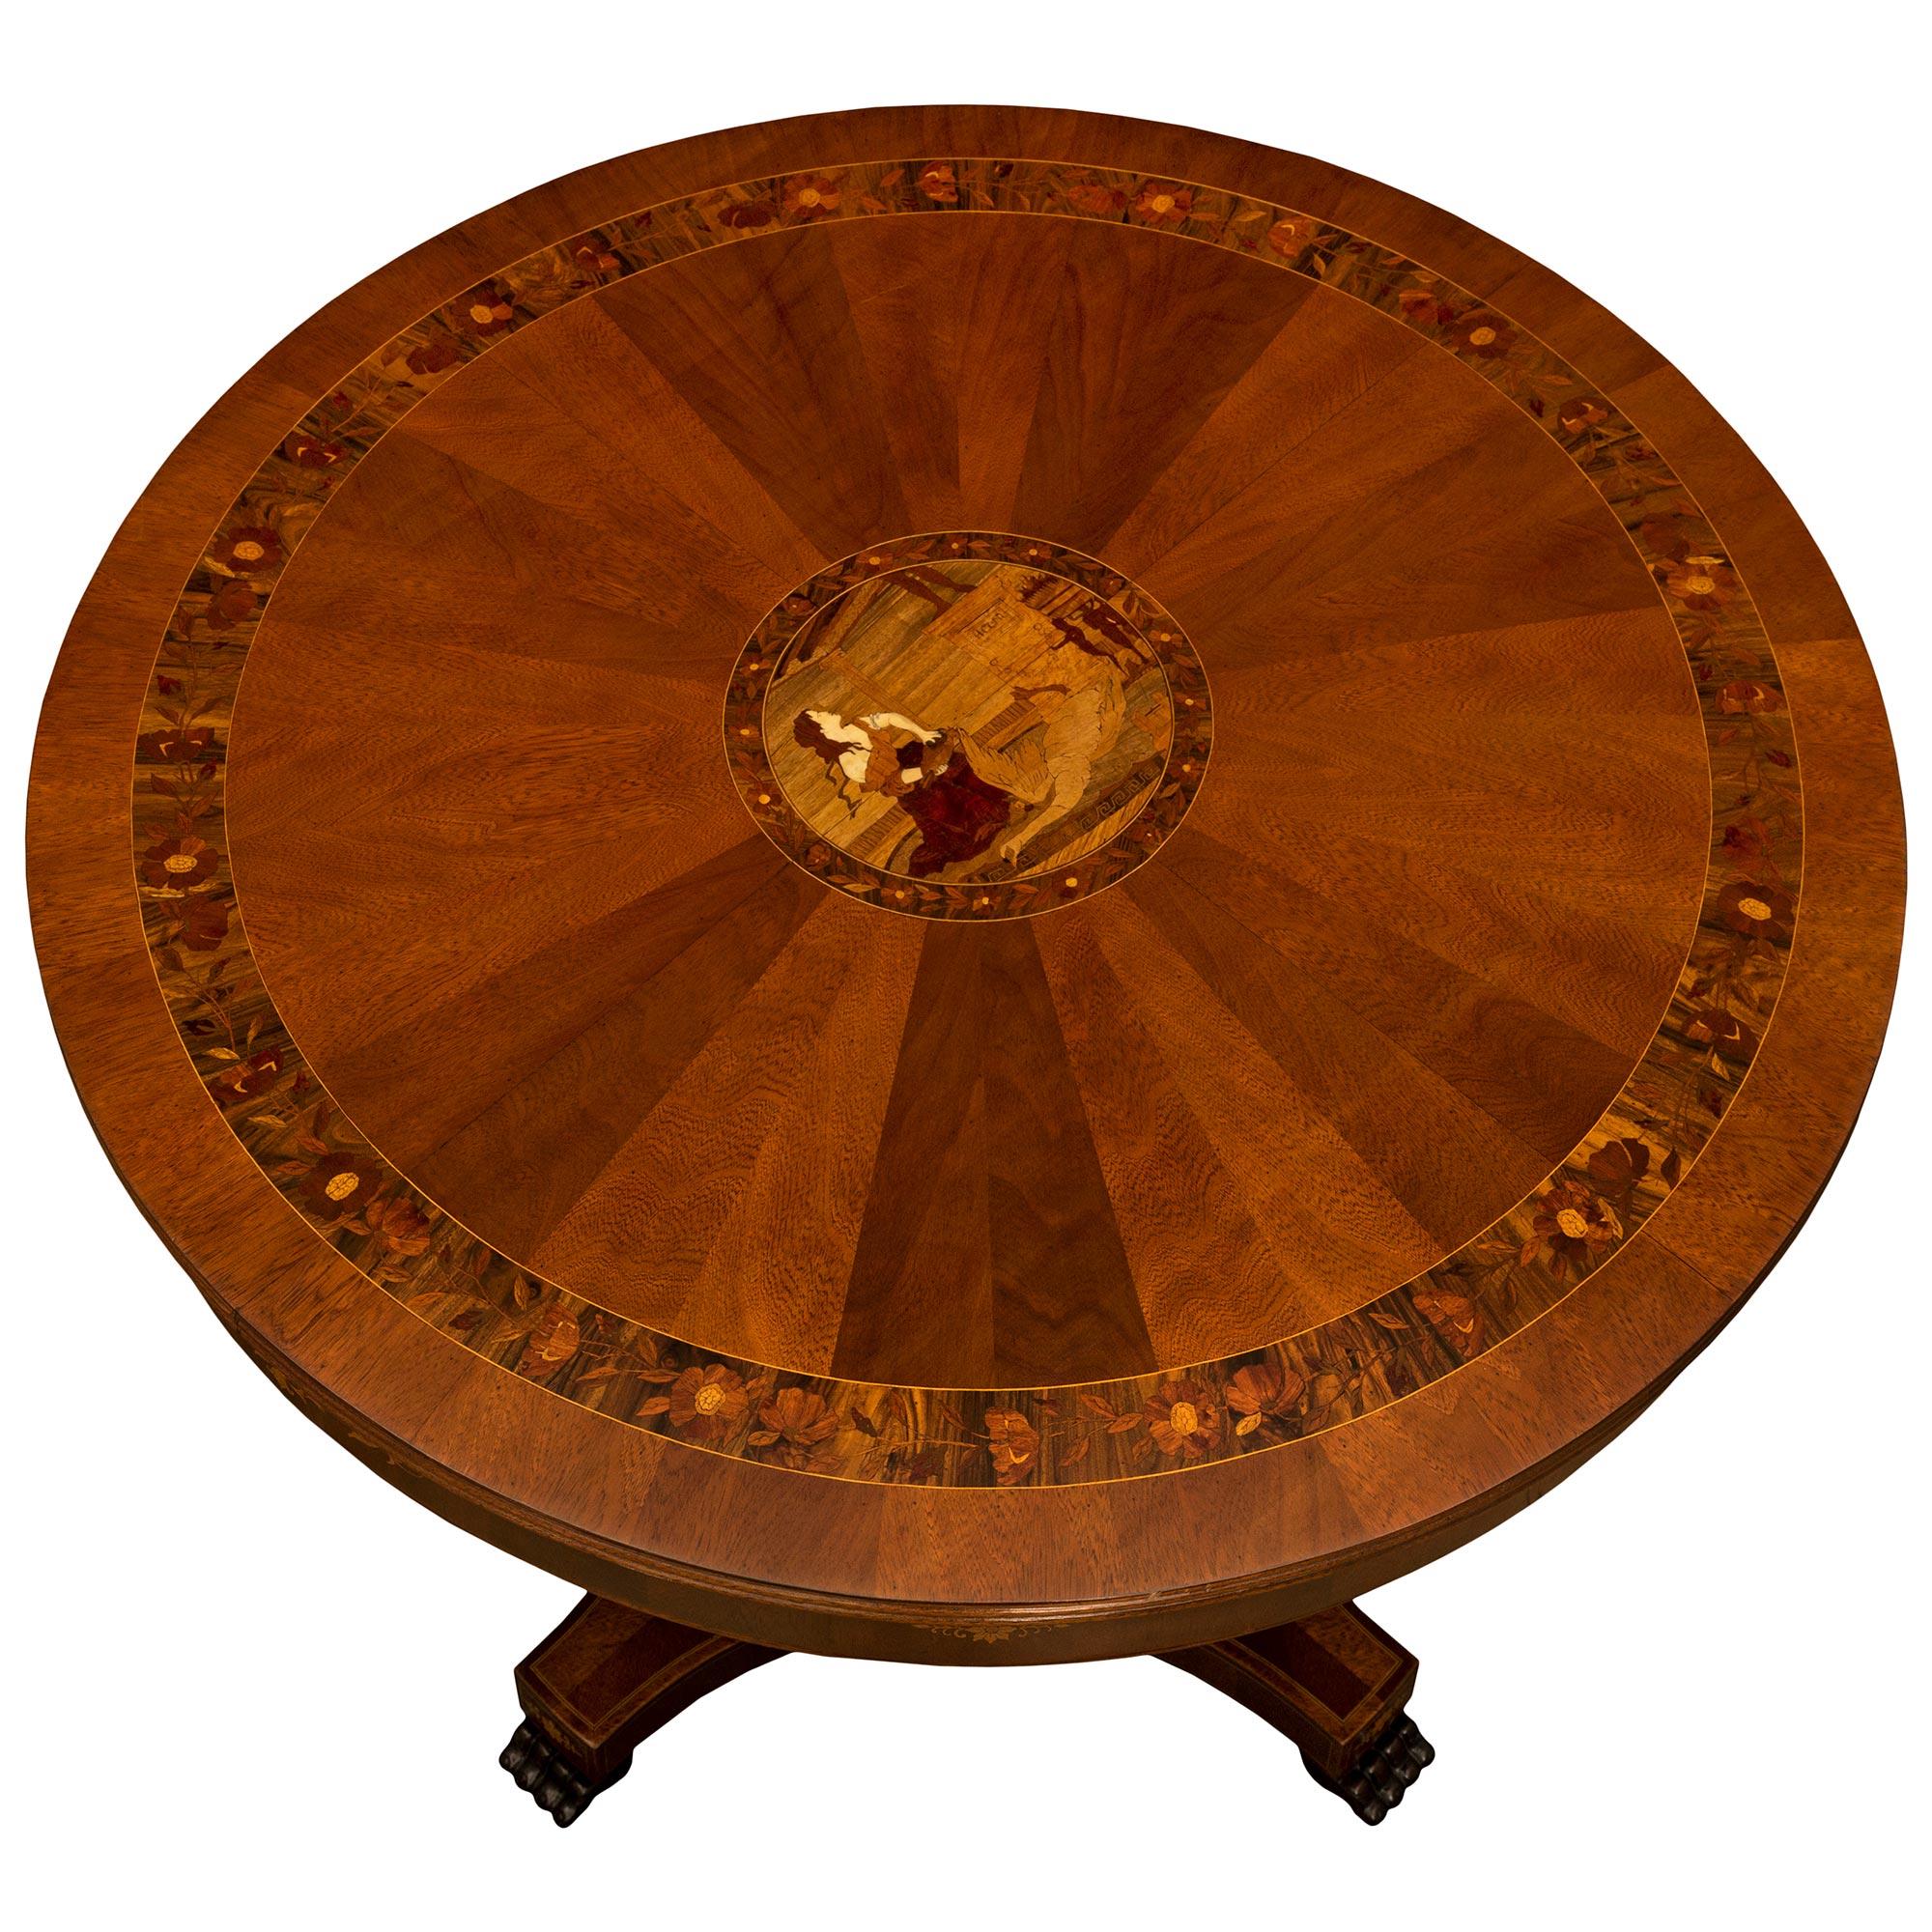 Très belle table centrale italienne du XIXe siècle de style Louis XVI en noyer, acajou et bois exotiques. La table est surmontée d'un piédestal carré dont les côtés concaves présentent des palmettes incrustées au-dessus des supports à pattes.